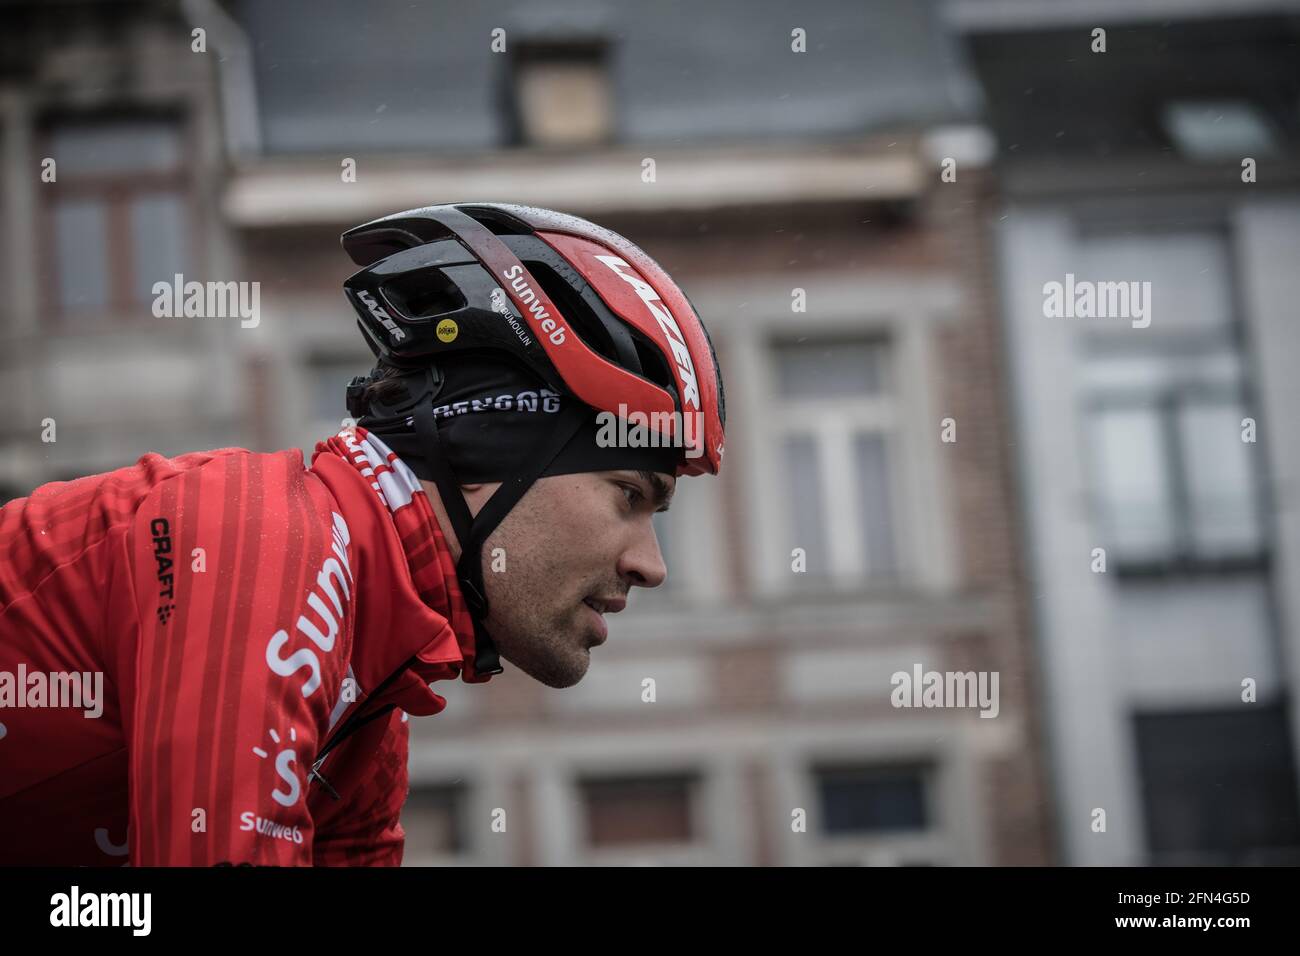 28/04/2019. Liège–Bastogne–Liège. Tom Dumoulin beim Start des Rennens. Stockfoto